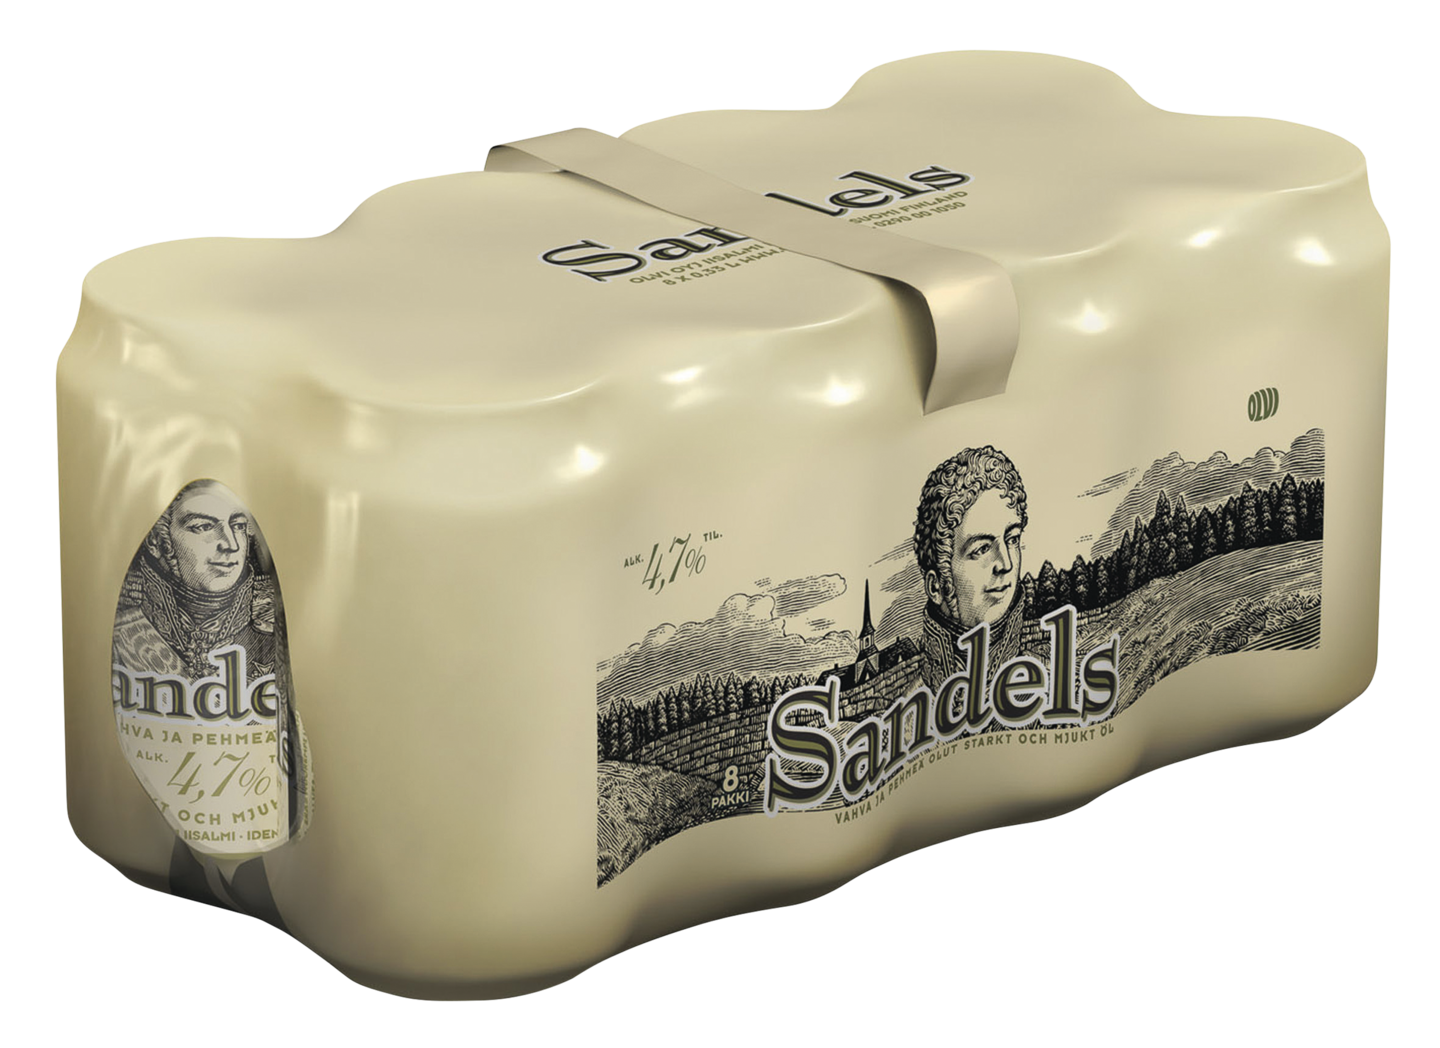 Sandels 0,33l 4,7% tlk 8-pack DOLLY